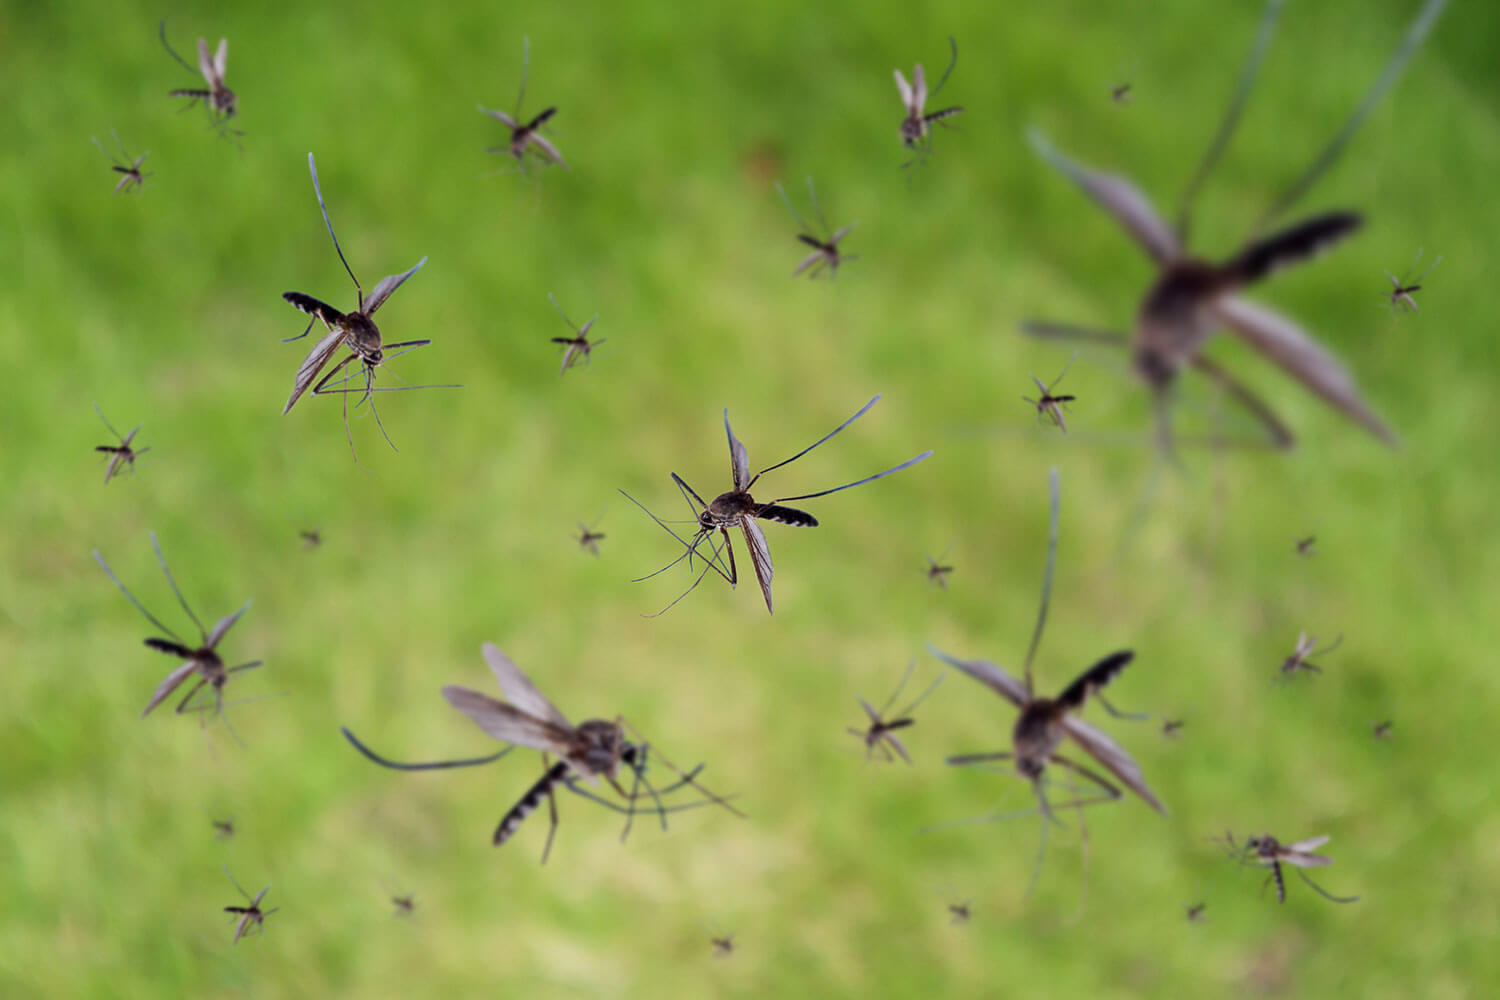 Hoard of mosquitos